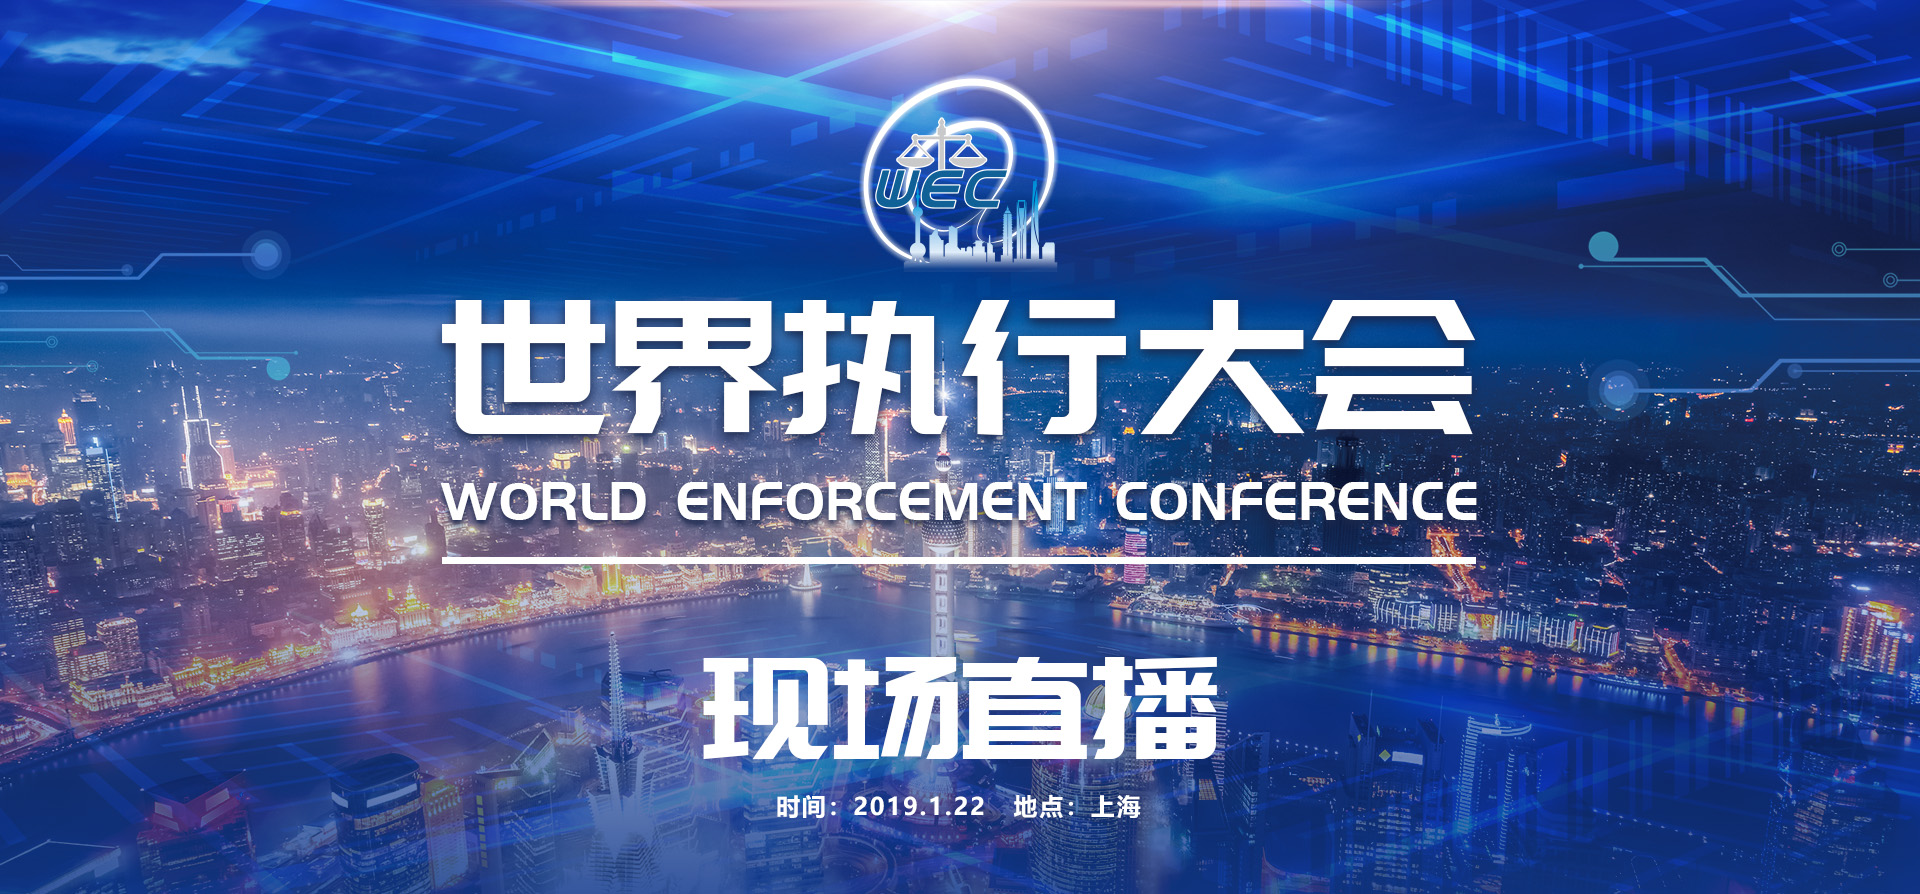 ​2019年1月22日，世界执行大会将在上海举办，聚焦“强制执行的现代化发展”。_fororder_微信图片_20190122081310